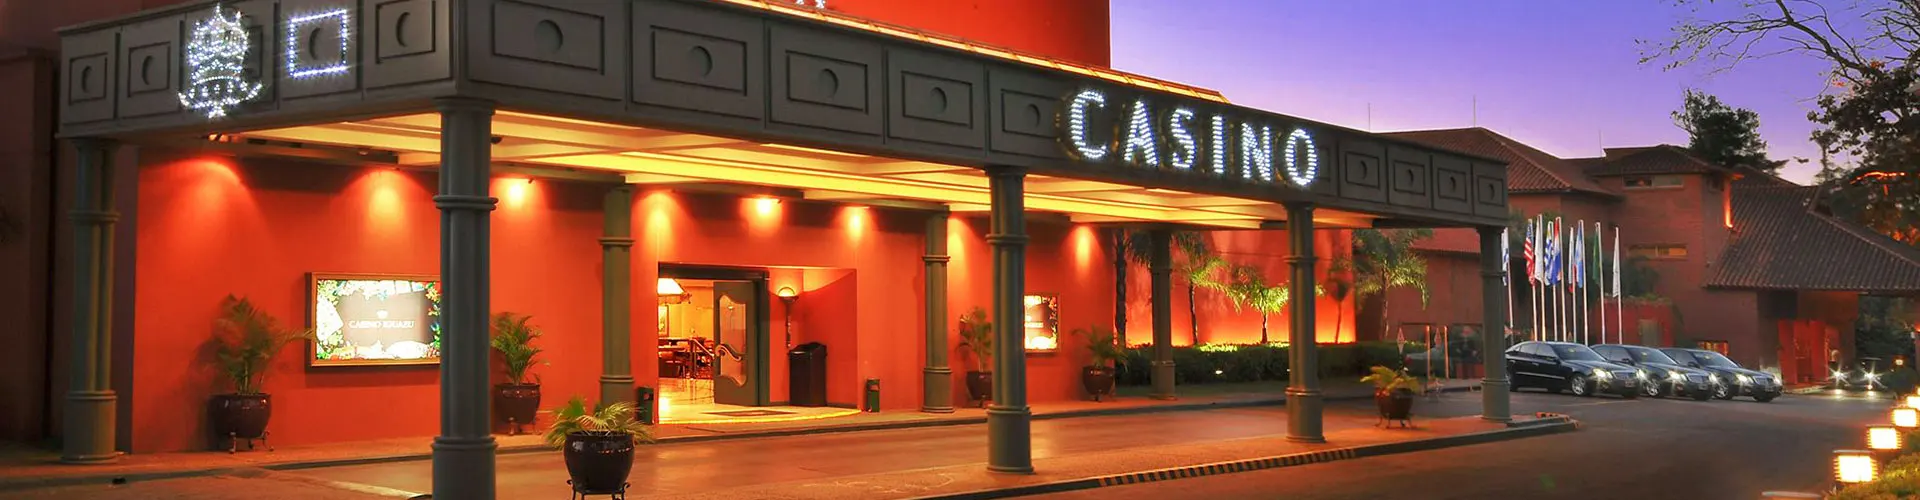 Casino City Center Iguazú